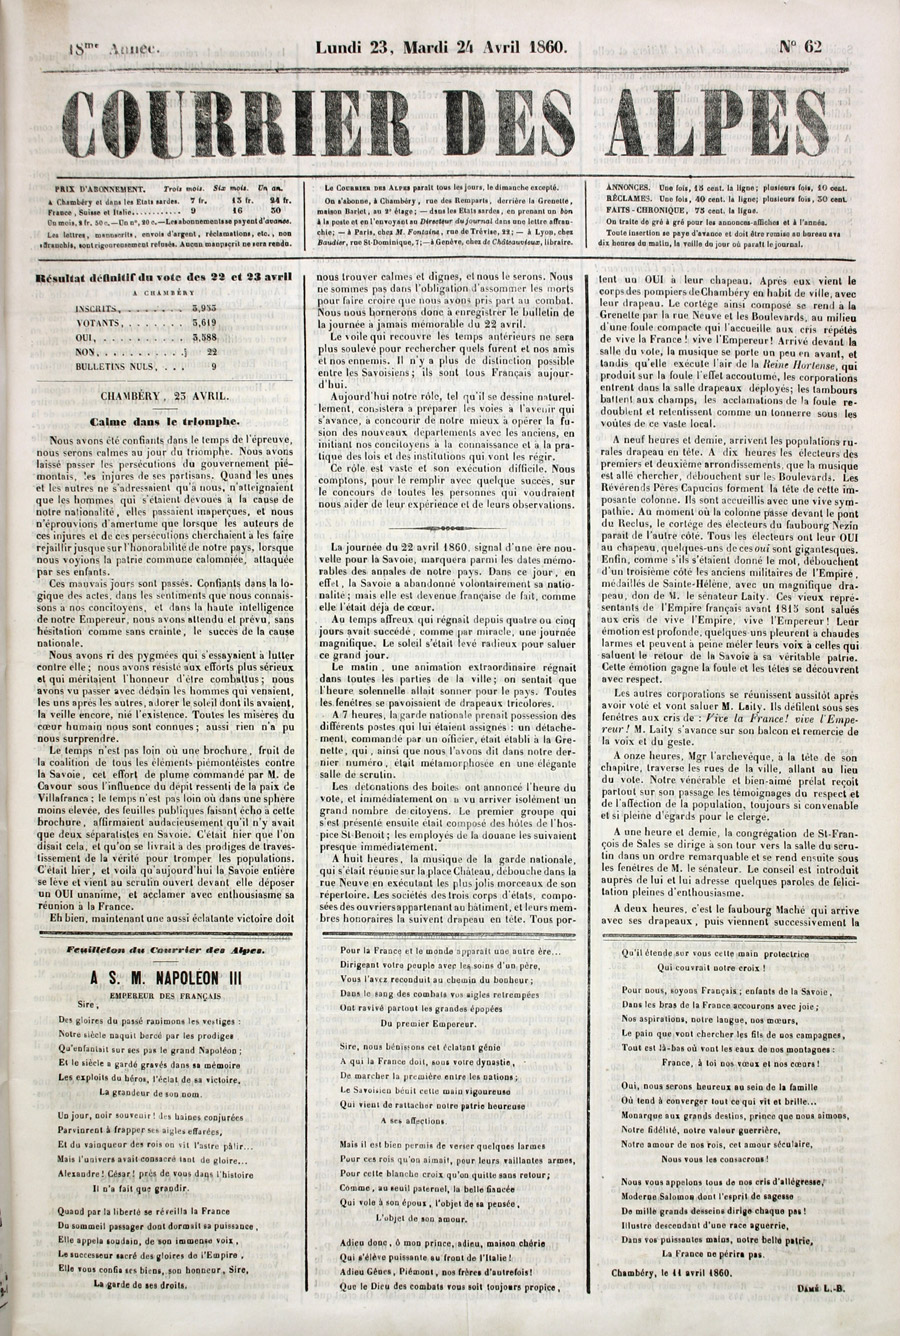 Le Courrier des Alpes, 23-24 avril 1860